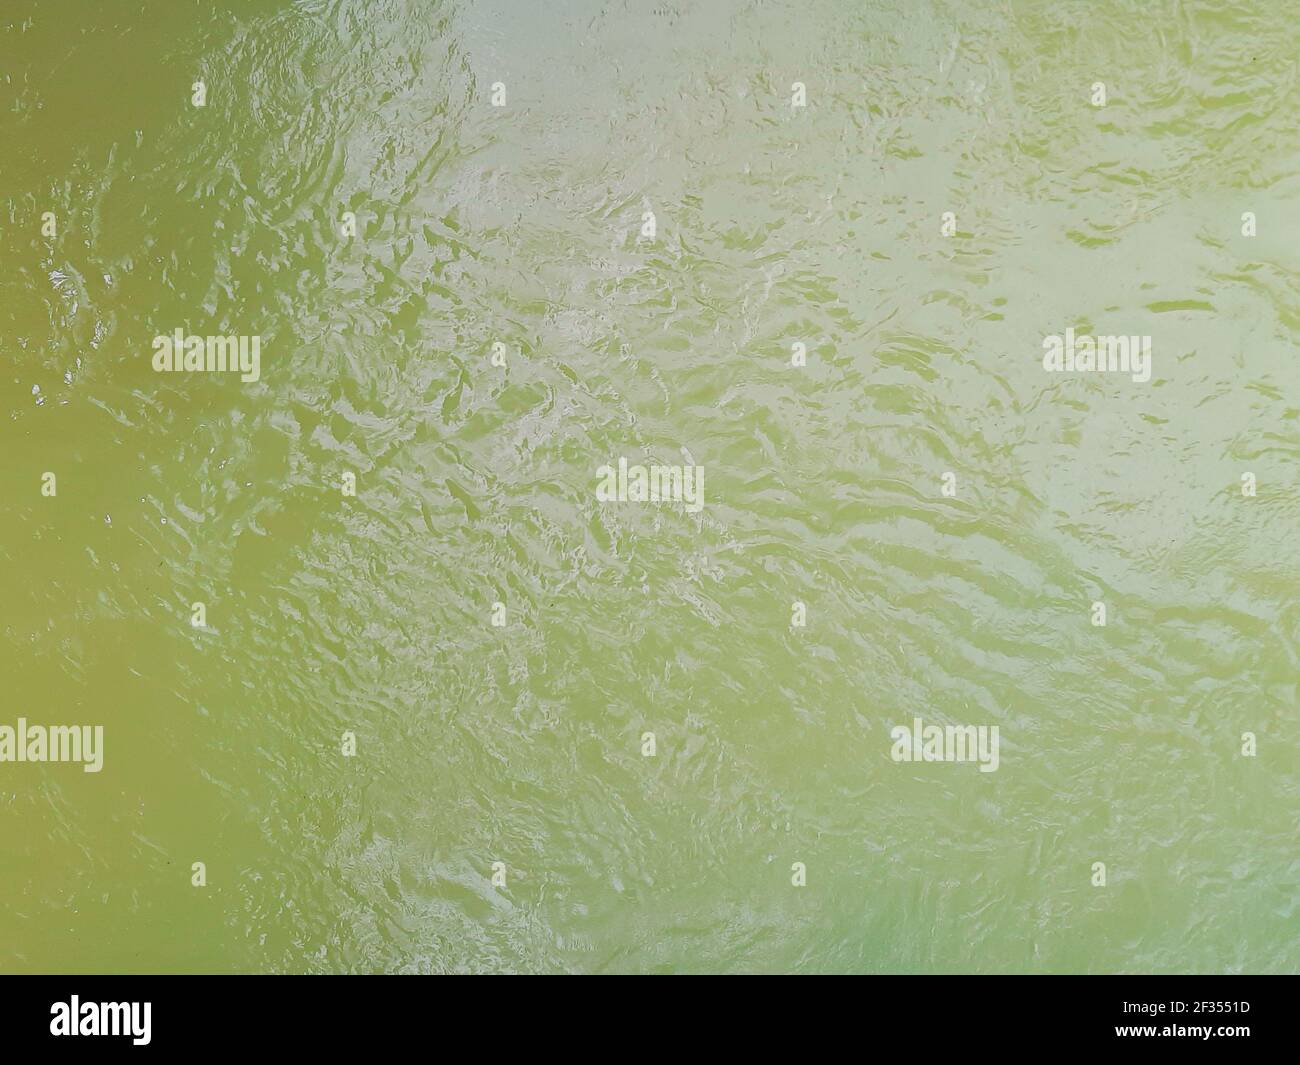 Vue en grand angle depuis l'eau de la rivière verte tropicale avec vagues fluides et réflexion. Fond vert plein format avec espace de copie plein format. Banque D'Images